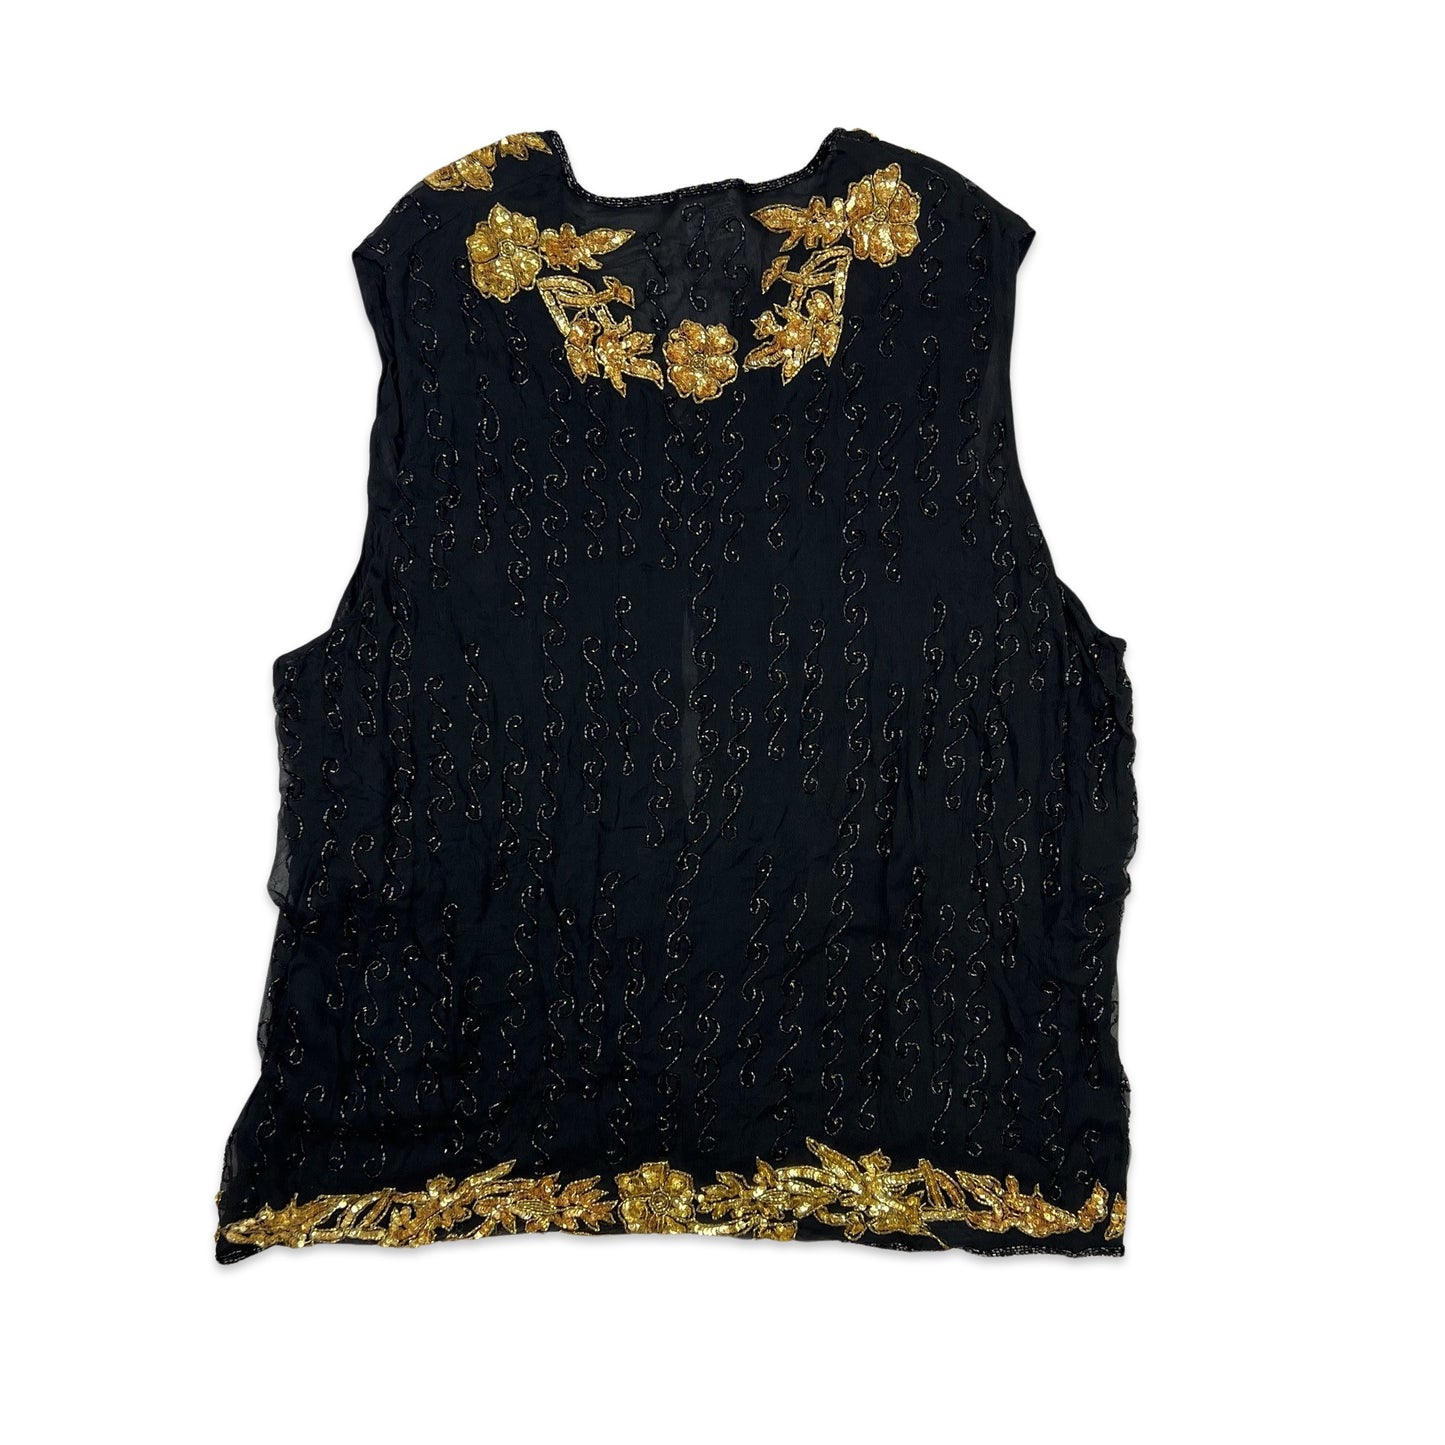 Vintage Sequin Blouse Waistcoat Black Gold 16